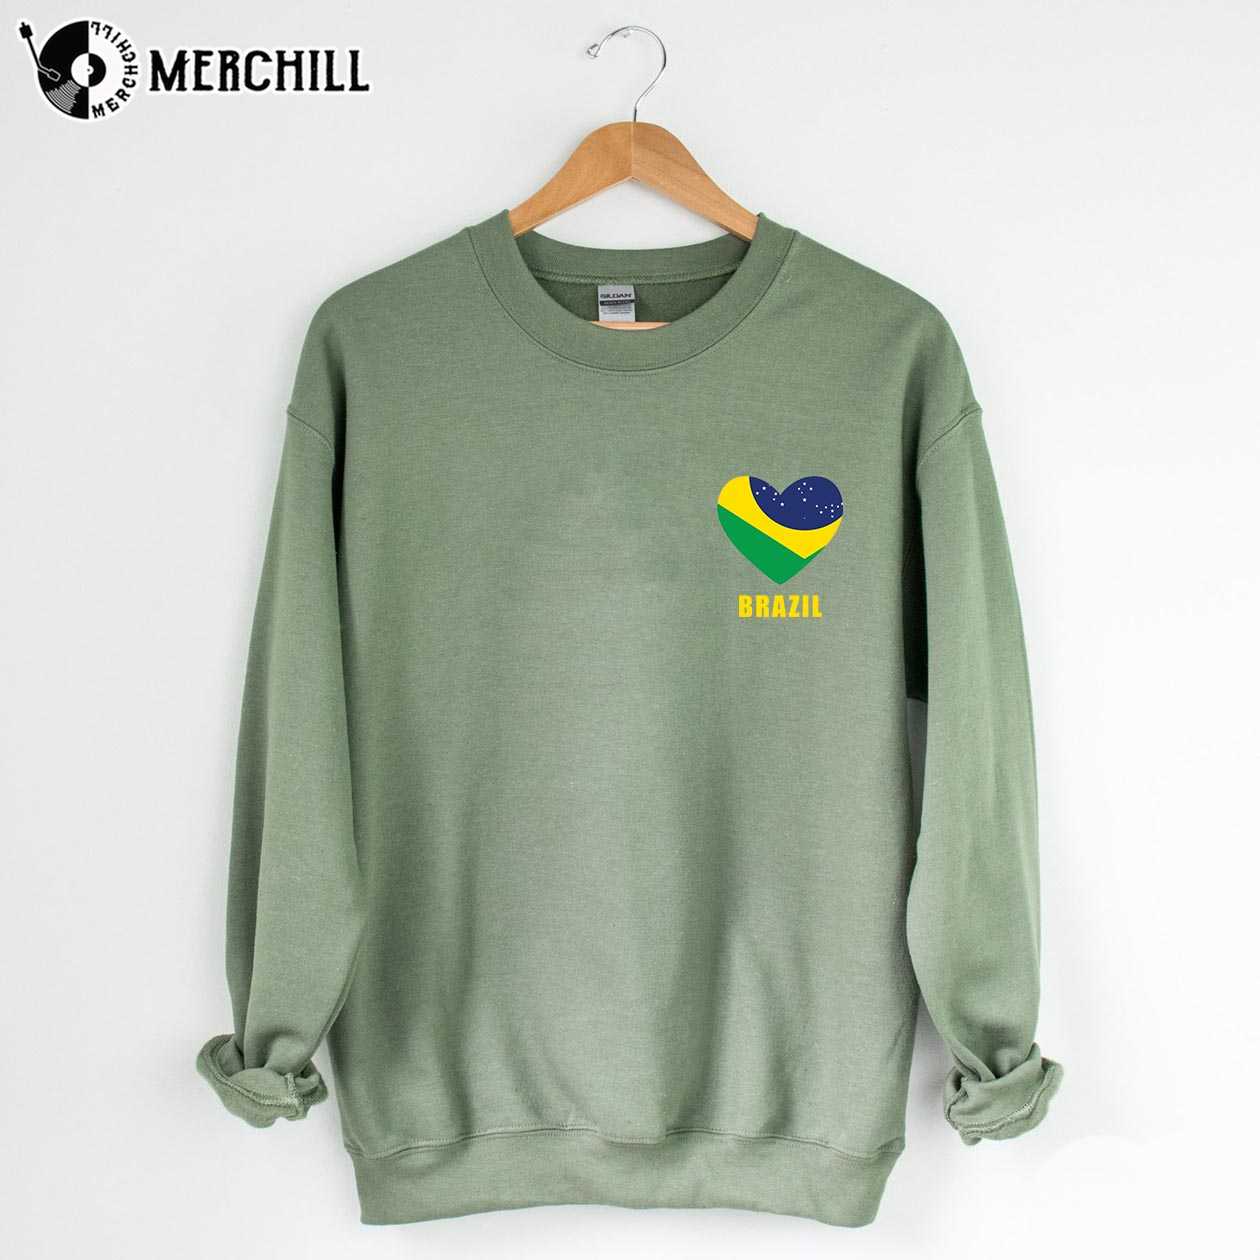 Heart Shape Brazil Flag Shirt Brasil Gift Ideas - Happy Place for